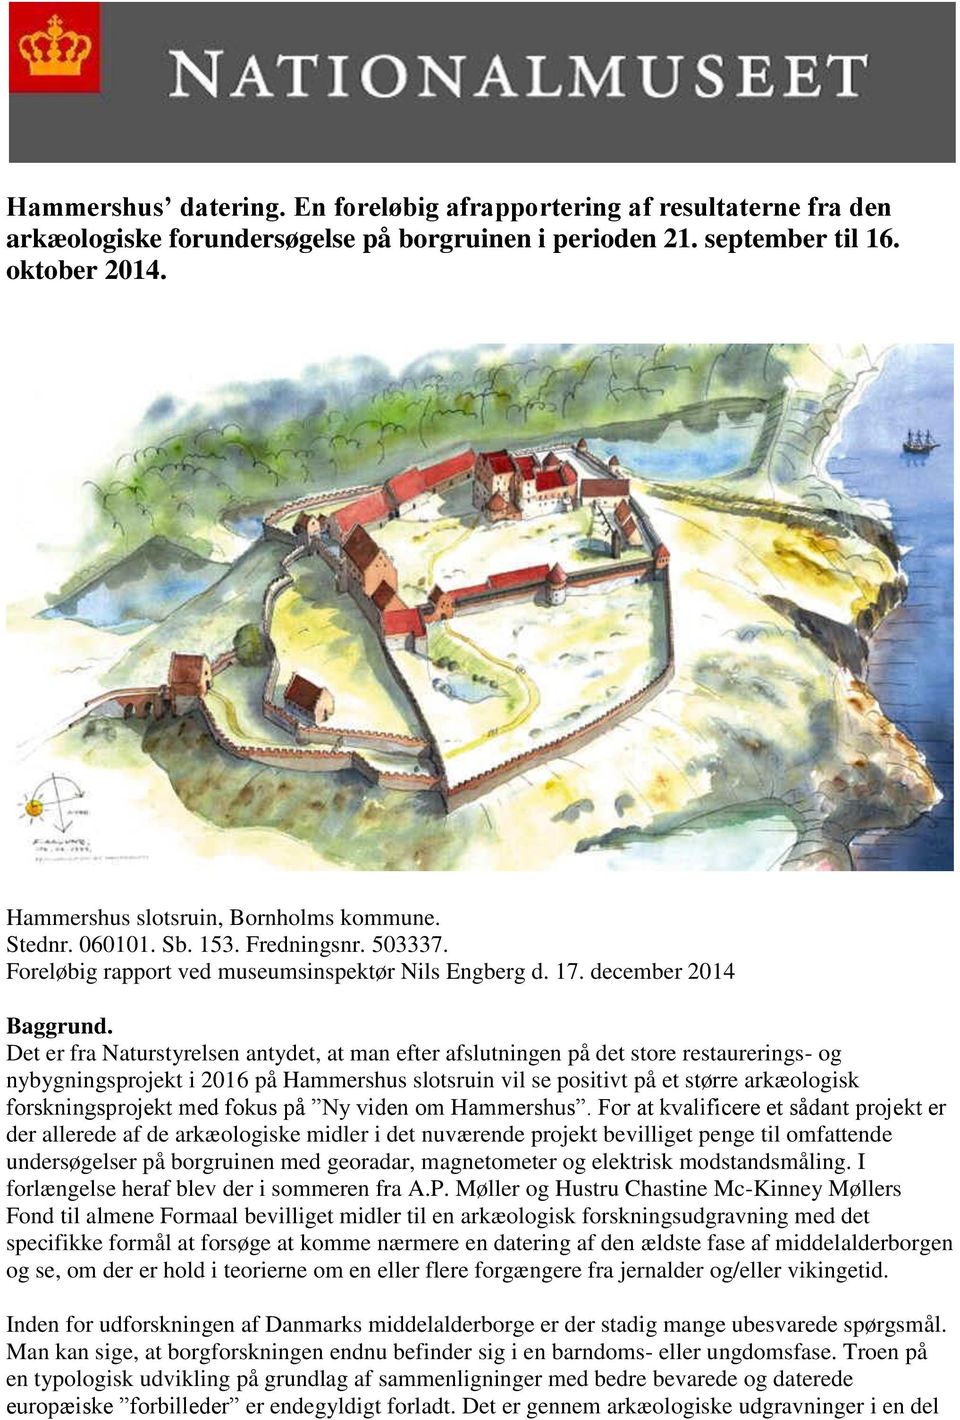 Det er fra Naturstyrelsen antydet, at man efter afslutningen på det store restaurerings- og nybygningsprojekt i 2016 på Hammershus slotsruin vil se positivt på et større arkæologisk forskningsprojekt